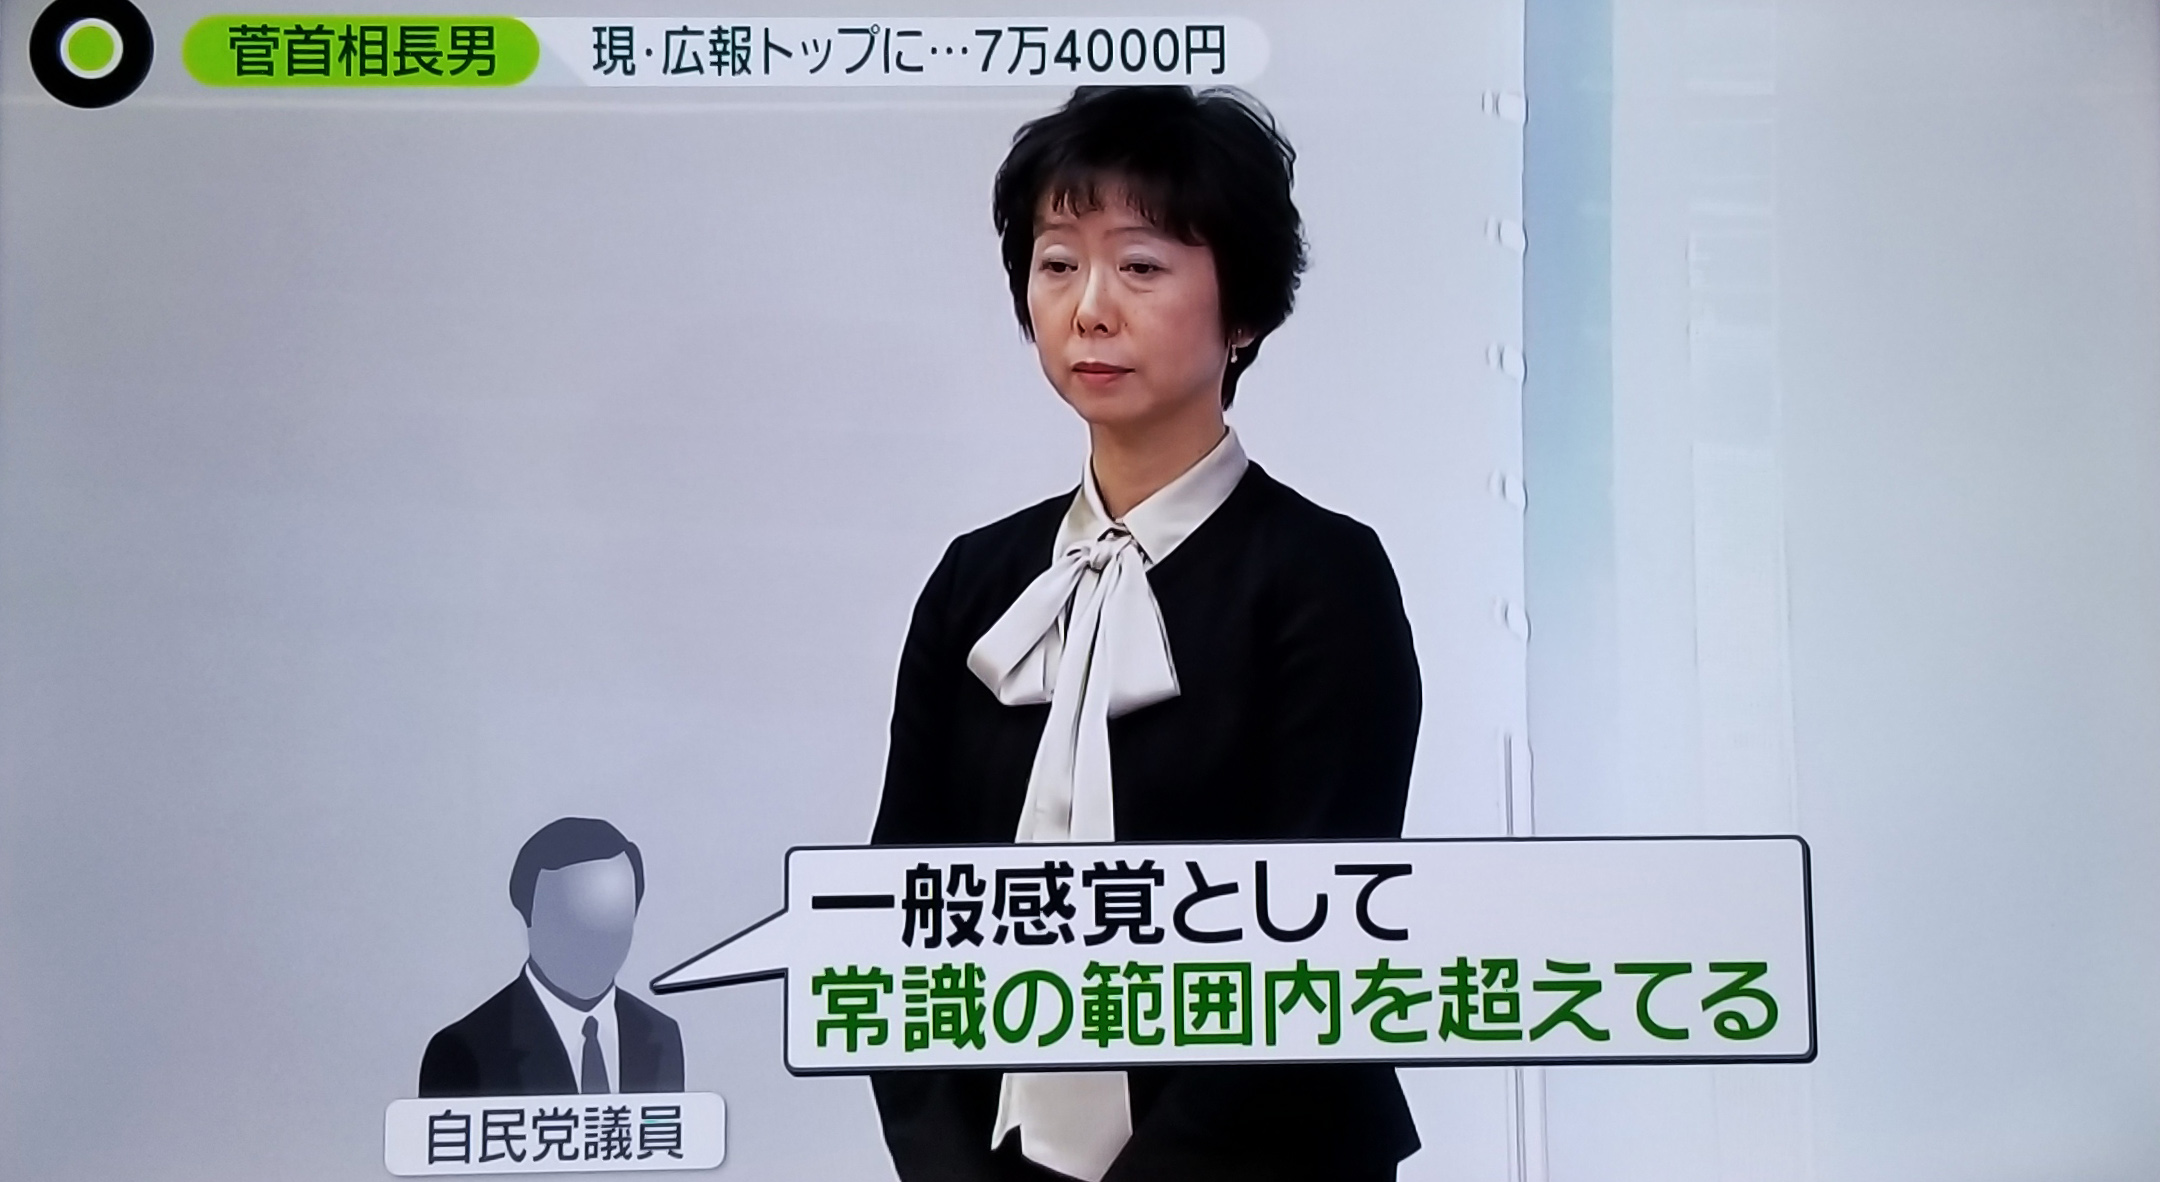 스가 요시히데 일본 총리의 아들이 근무하는 기업체로부터 접대를 받은 사실이 드러난 야마다 마키코(60) 일본 내각홍보관. 니혼TV 화면 캡처